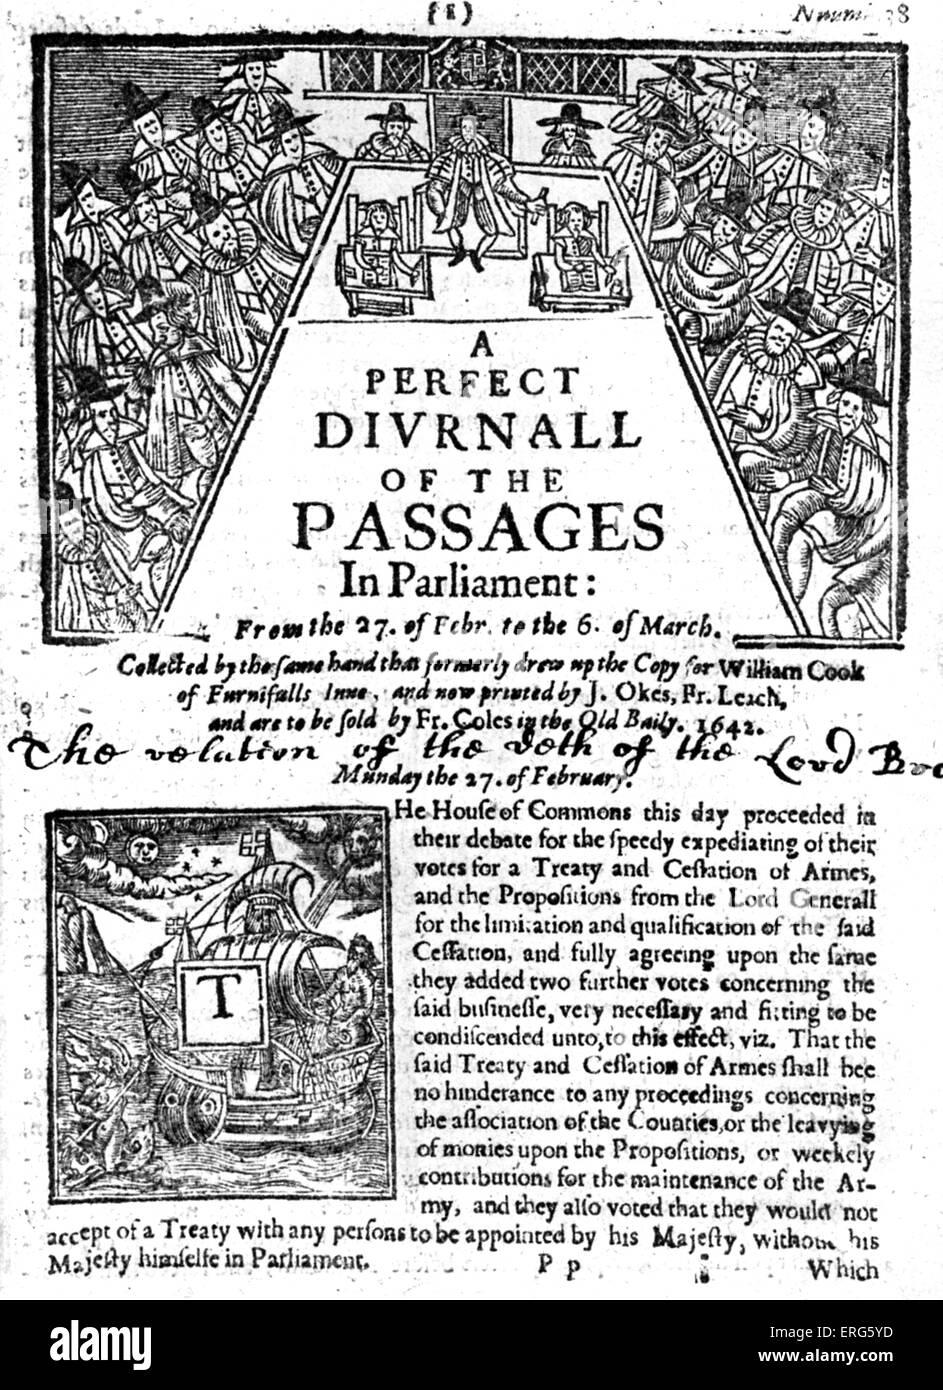 Un perfetto diurno dei passaggi in Parlamento - Pagina anteriore, febbraio 1642. Quotidiano inglese. Foto Stock